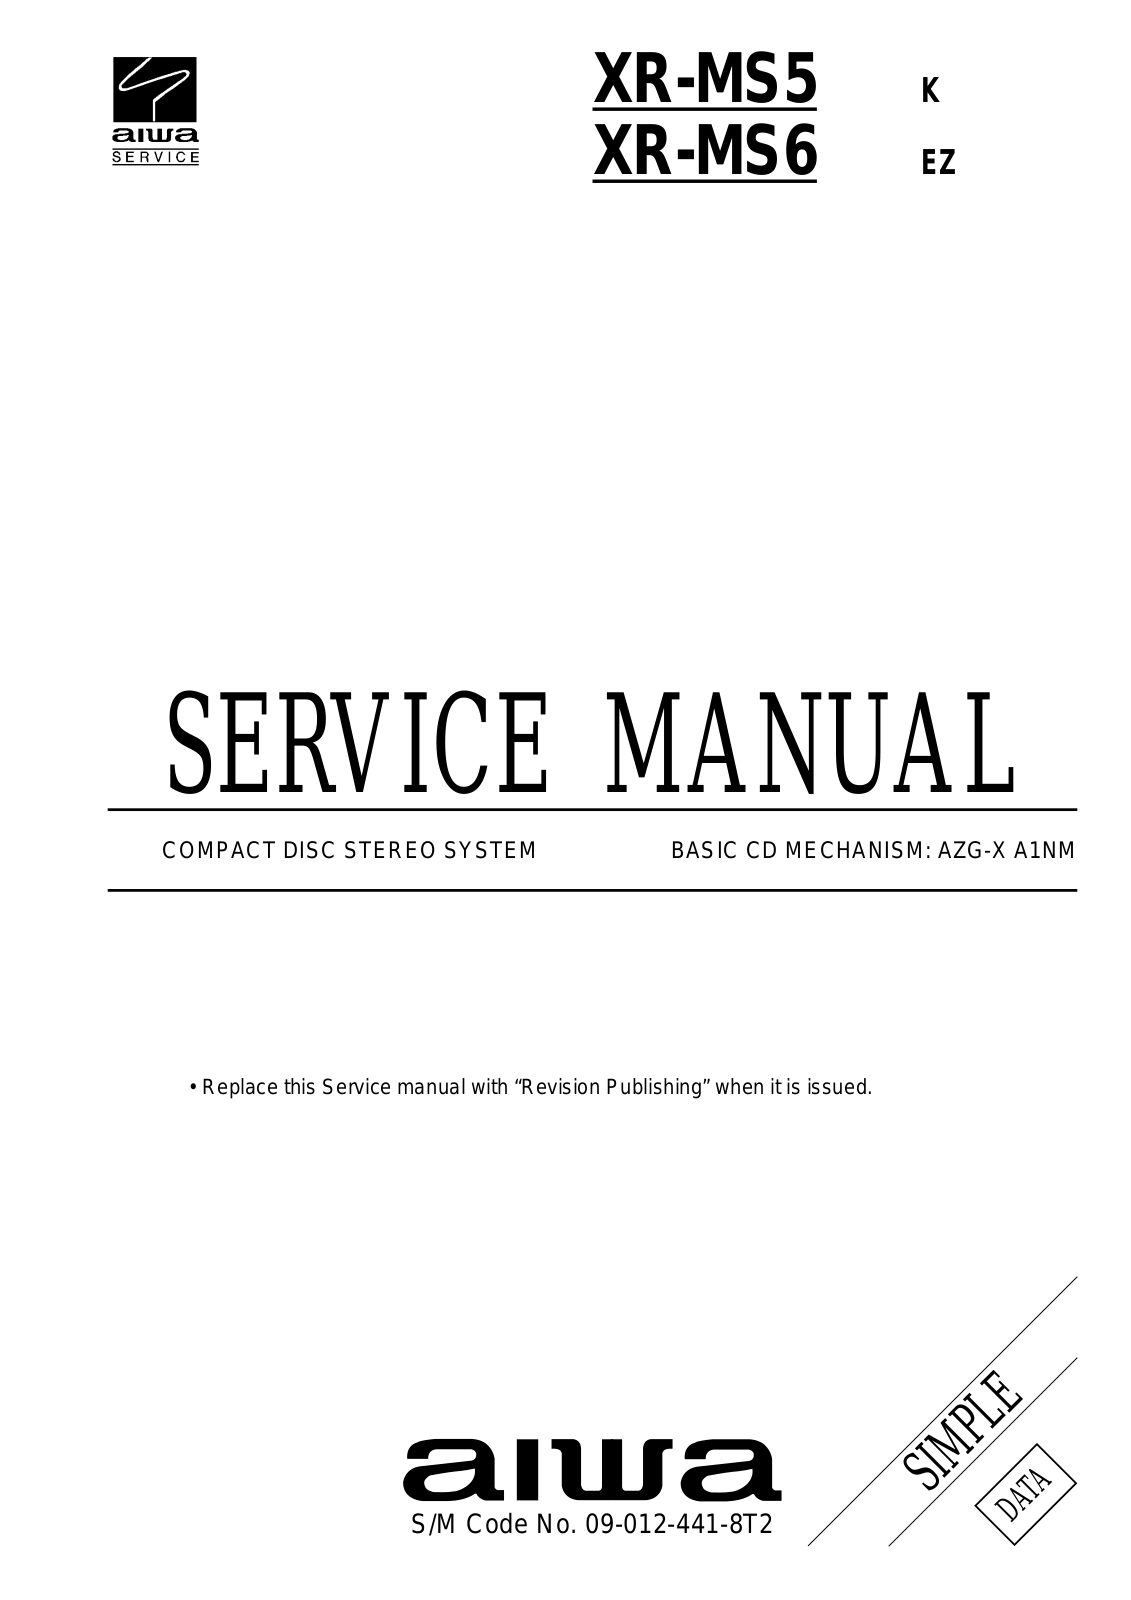 Aiwa XR-MS5, XR-MS6 Service Manual